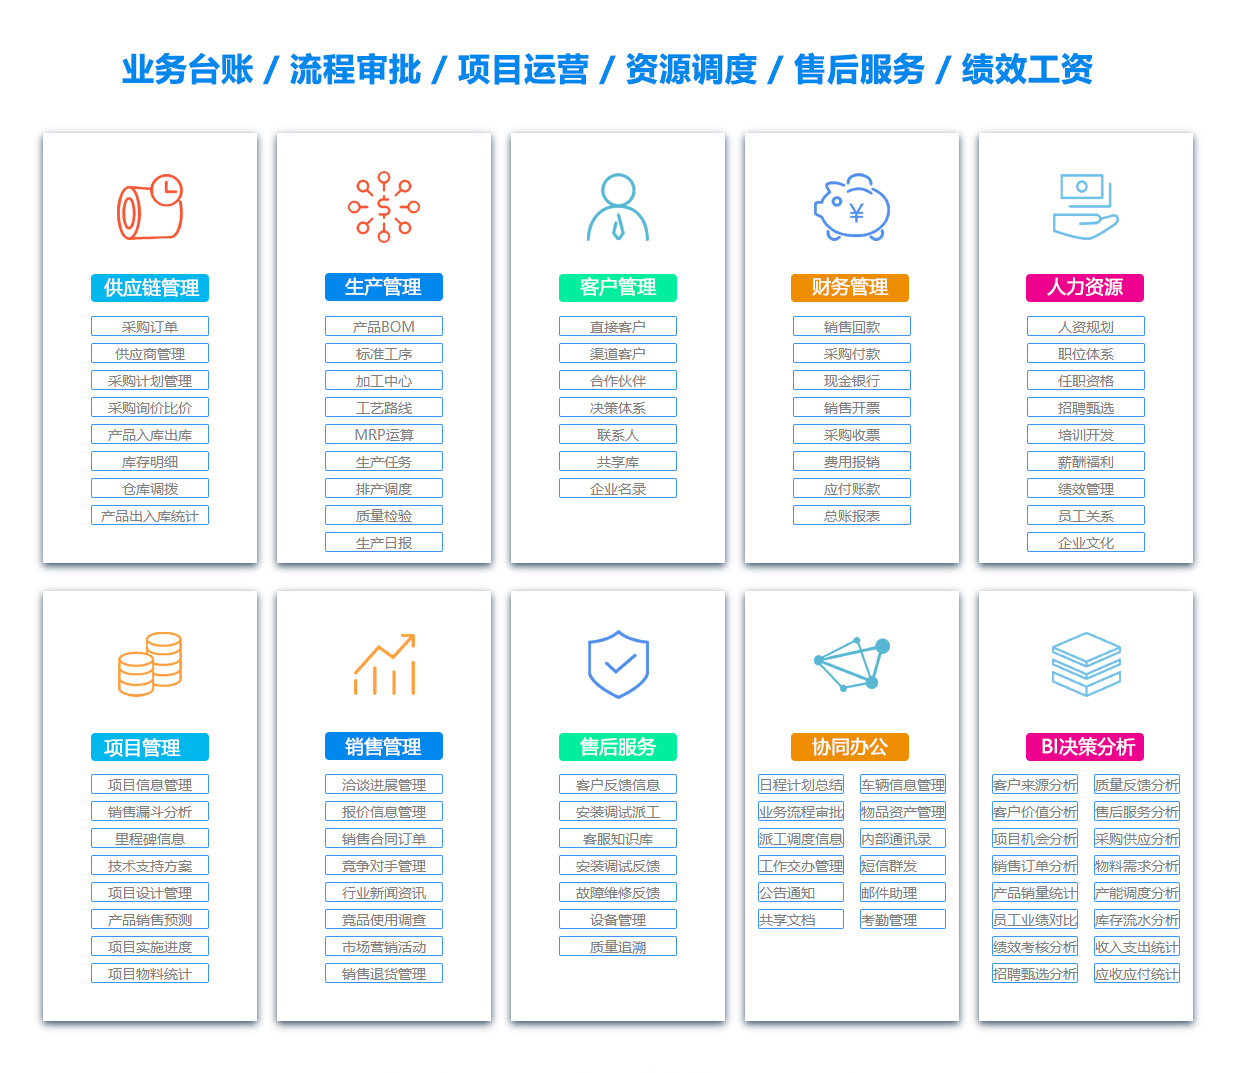 肇庆PDM:产品数据管理系统